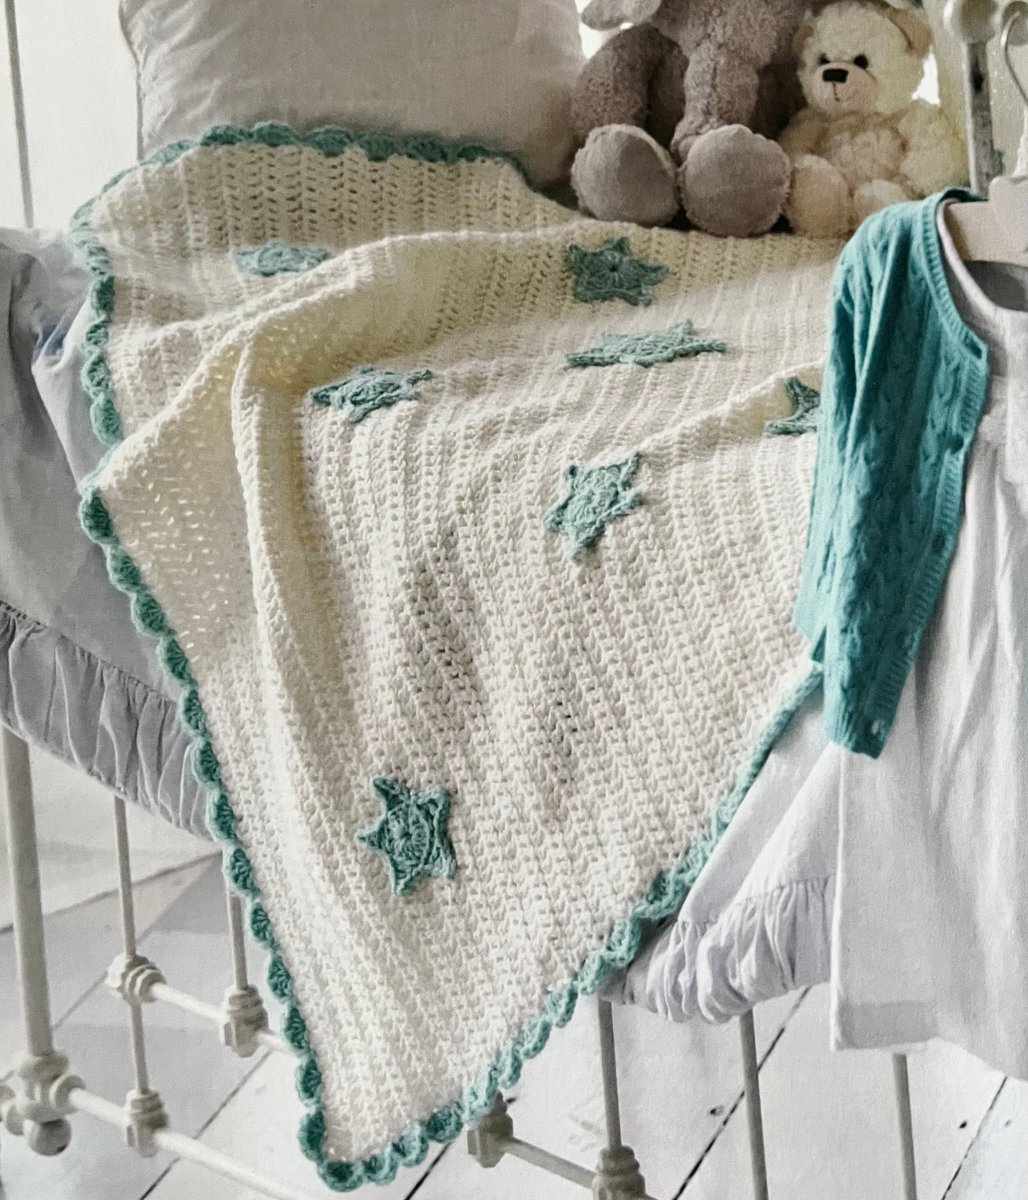 An Easy Crochet Star Blanket Pattern etsy.me/3ZGUsgJ #babyshower #homeimprovement #babygift  #throw #star #blanket #crochetpattern #wip #crochet #gift #easycrochet #quickmakes #earlybiz #craftbiz #MHHSBD #shopindie #crafts